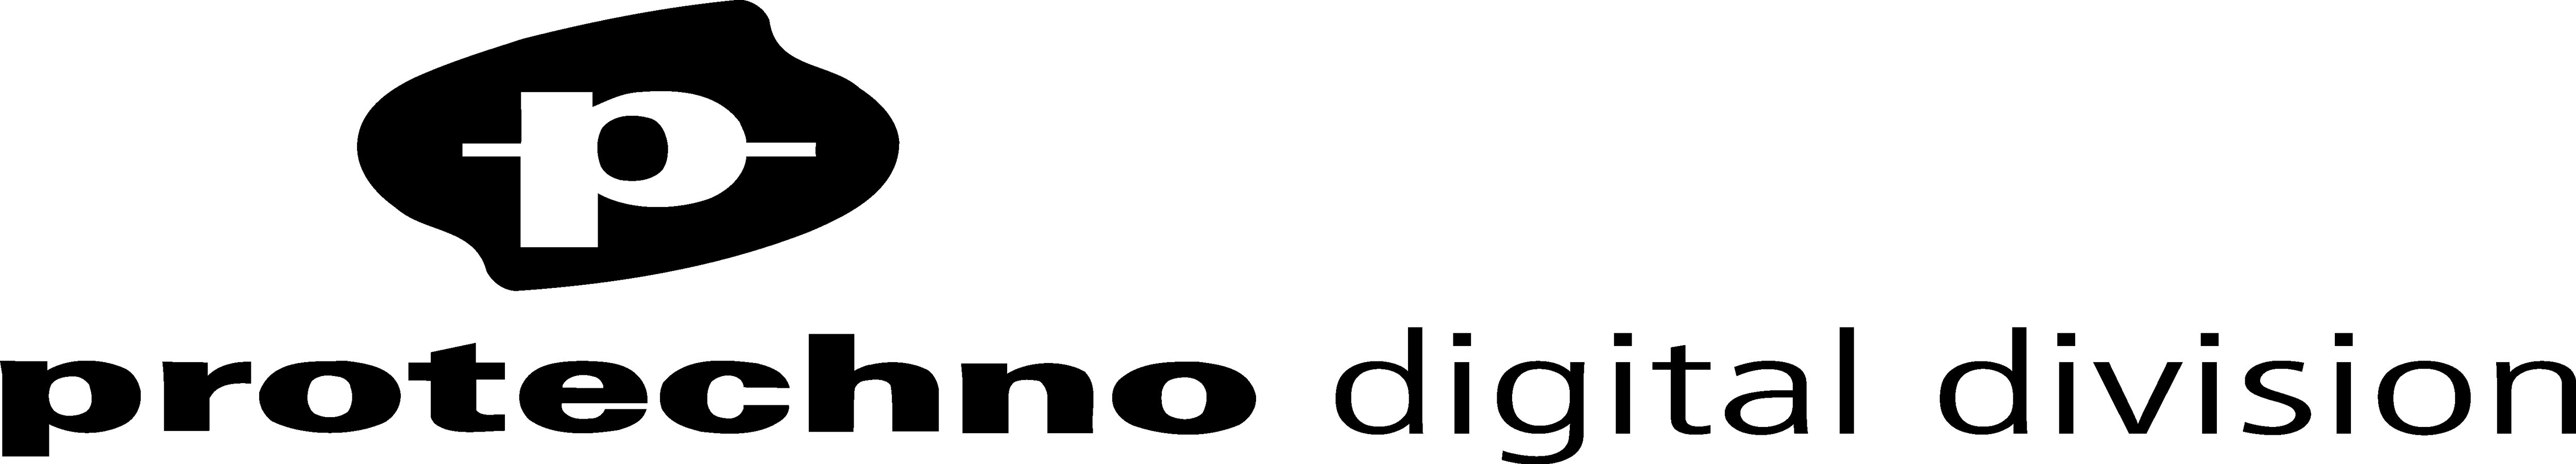 protechno digital division